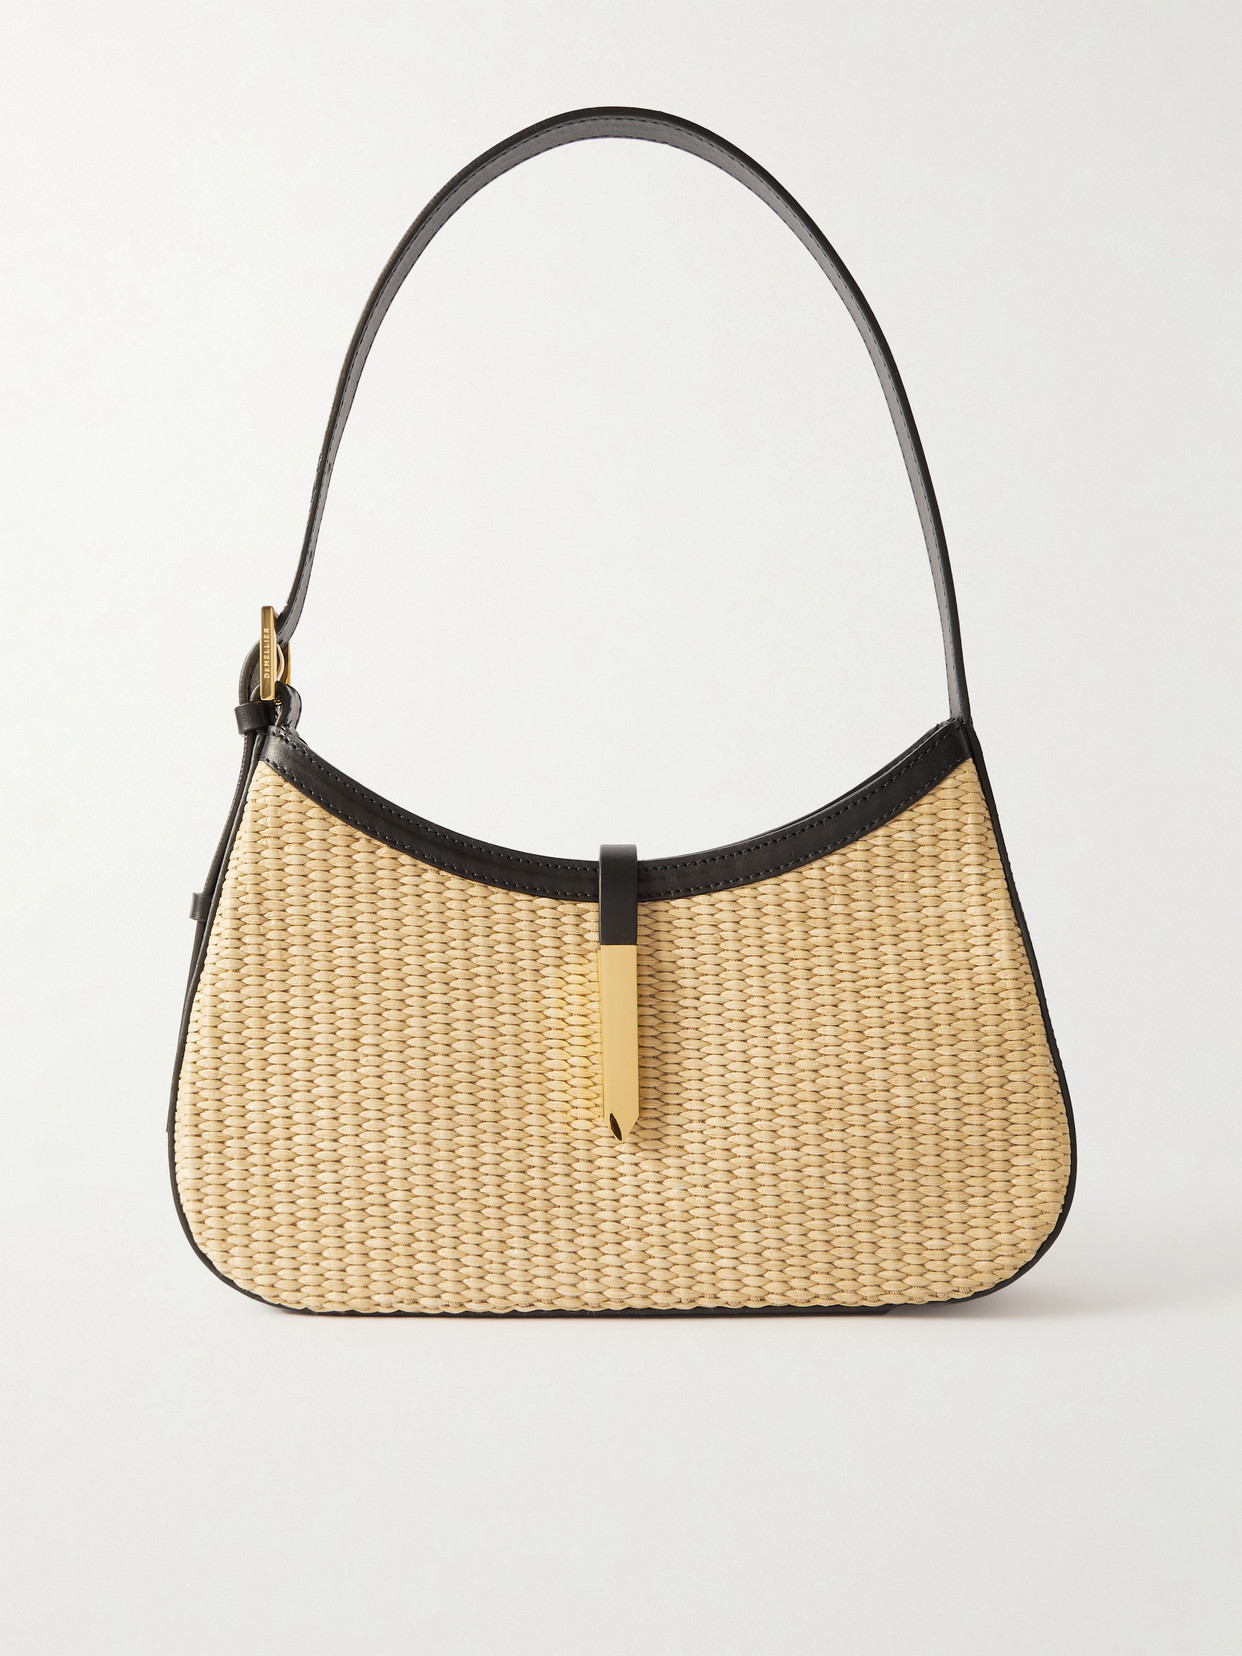 + Net Sustain Tokyo Leather-Trimmed Raffia Shoulder Bag